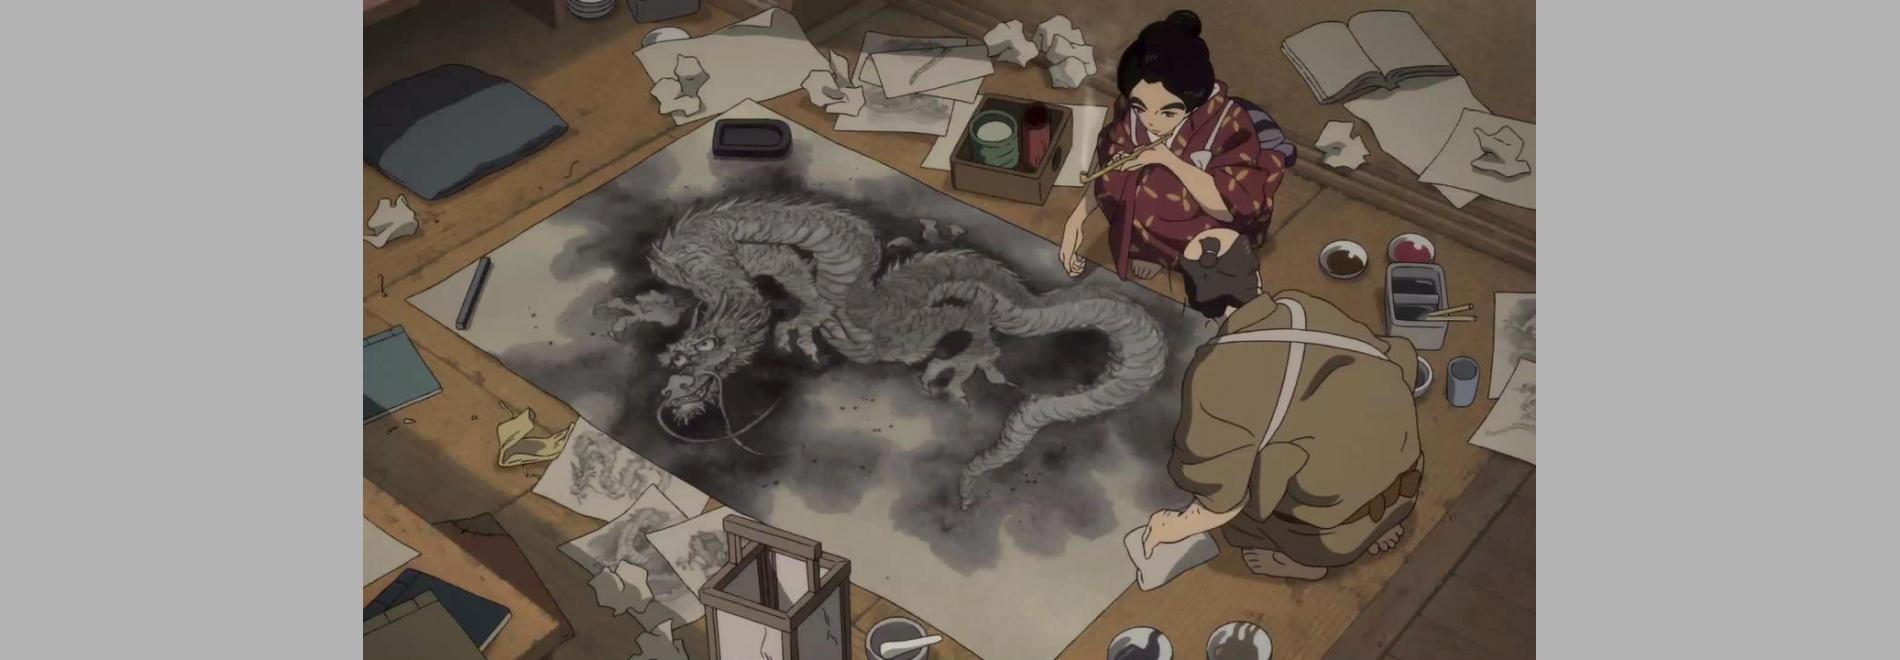 Sarusuberi: Miss Hokusai / Miss Hokusai (Keiichi Hara, 2015)